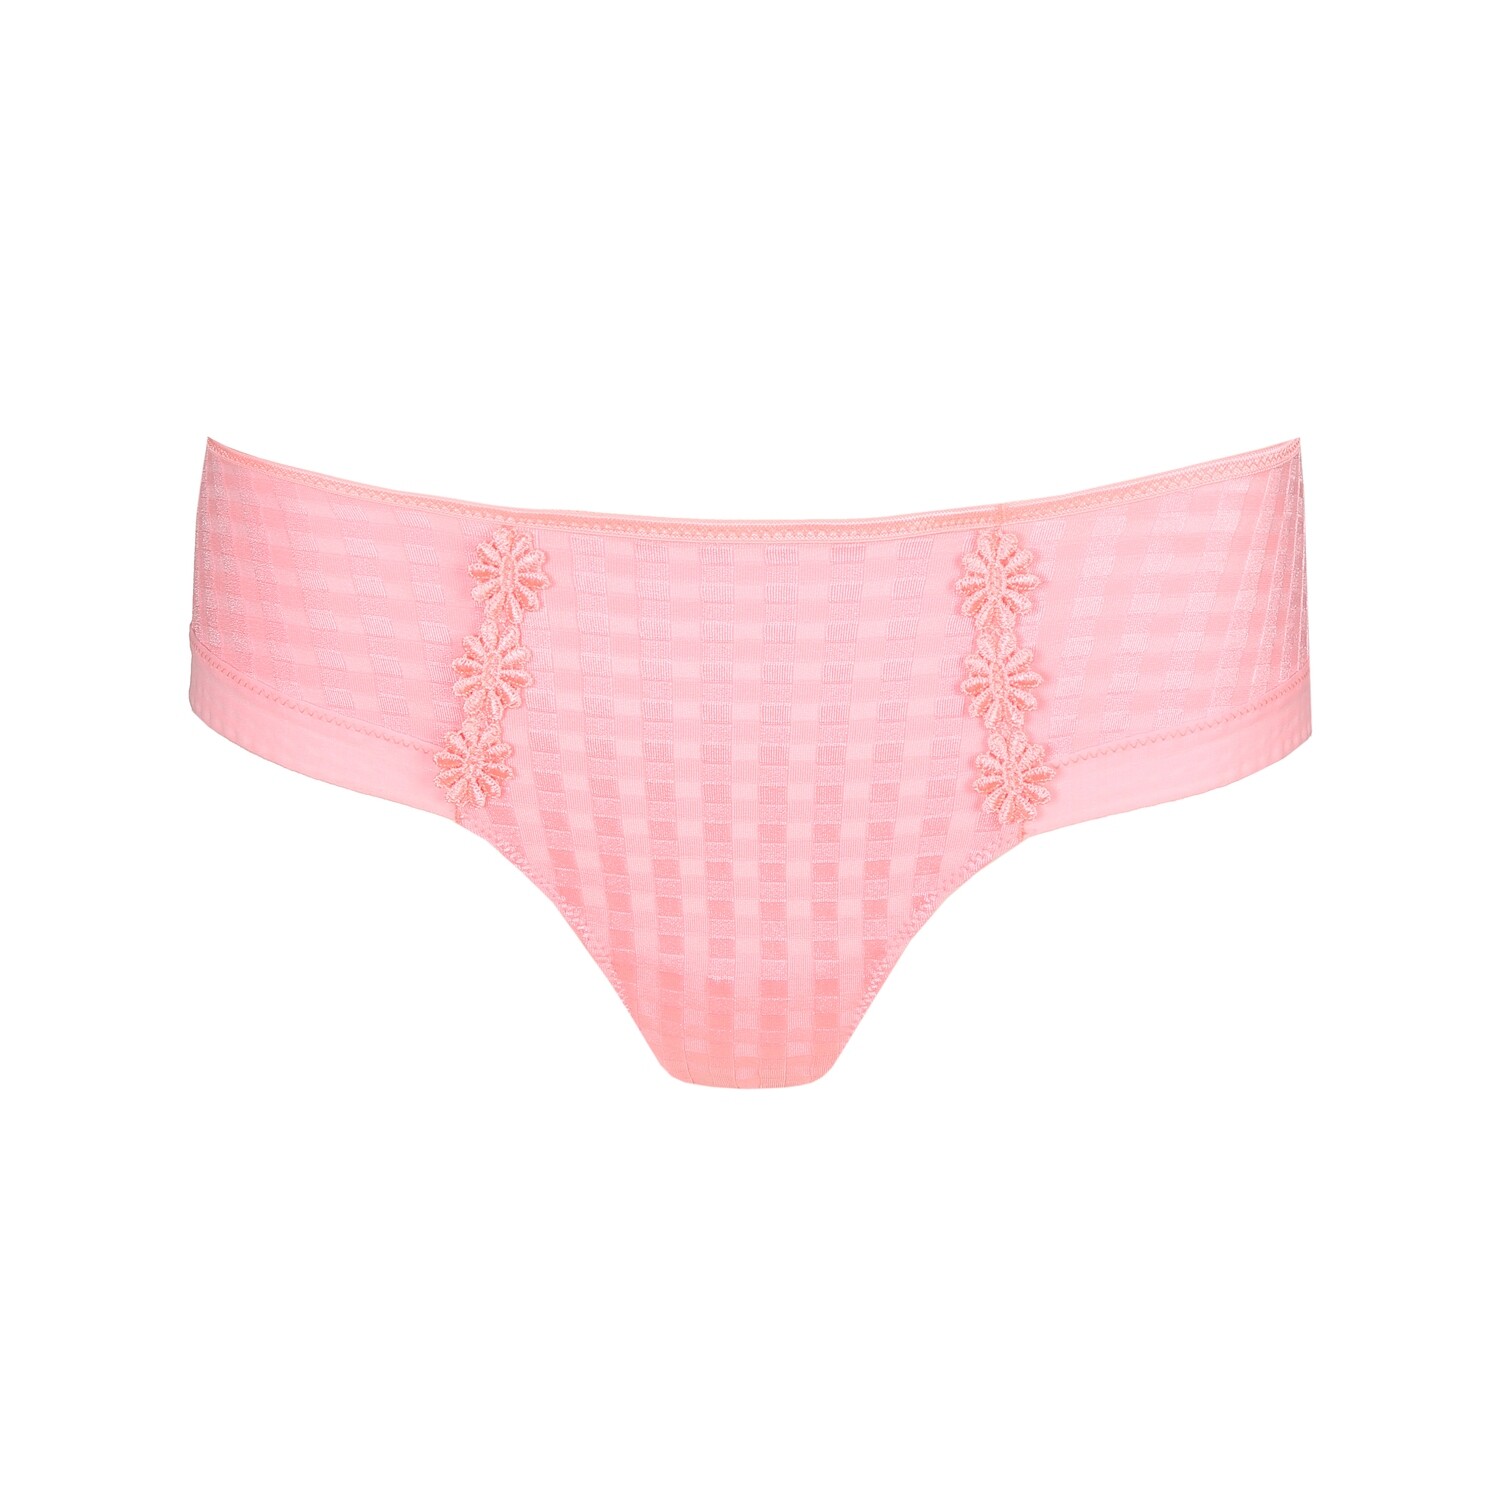 hotpants Marie Jo Avero pink parfait